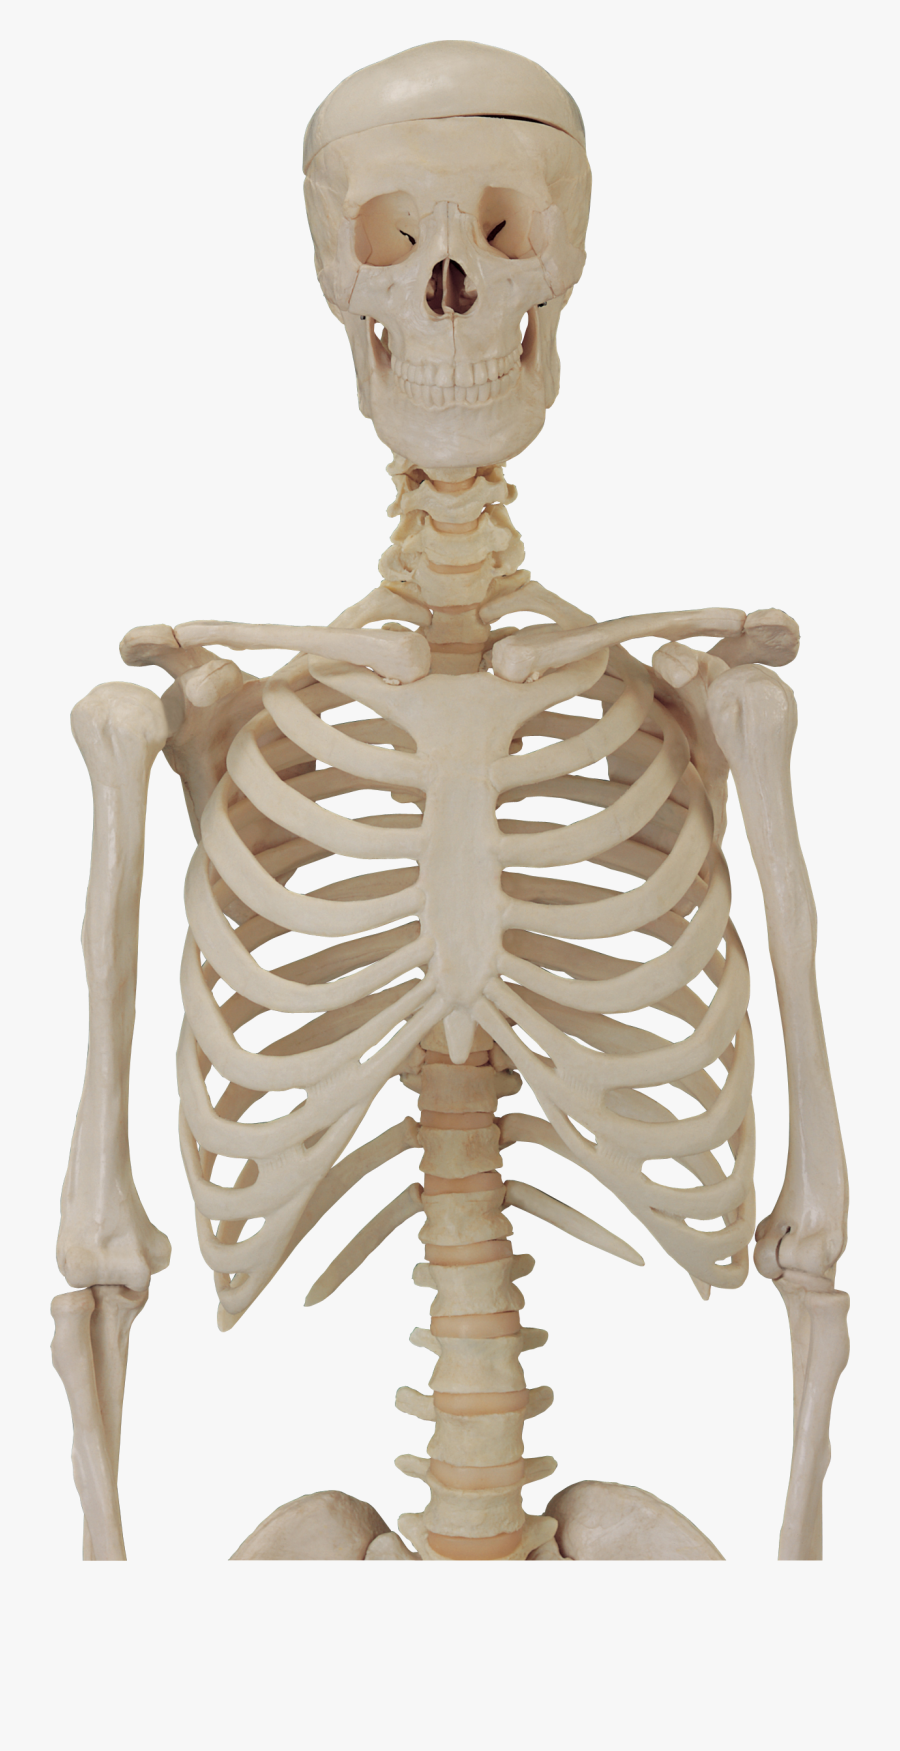 Skeleton Png Image - Skeleton Body Transparent Background, Transparent Clipart